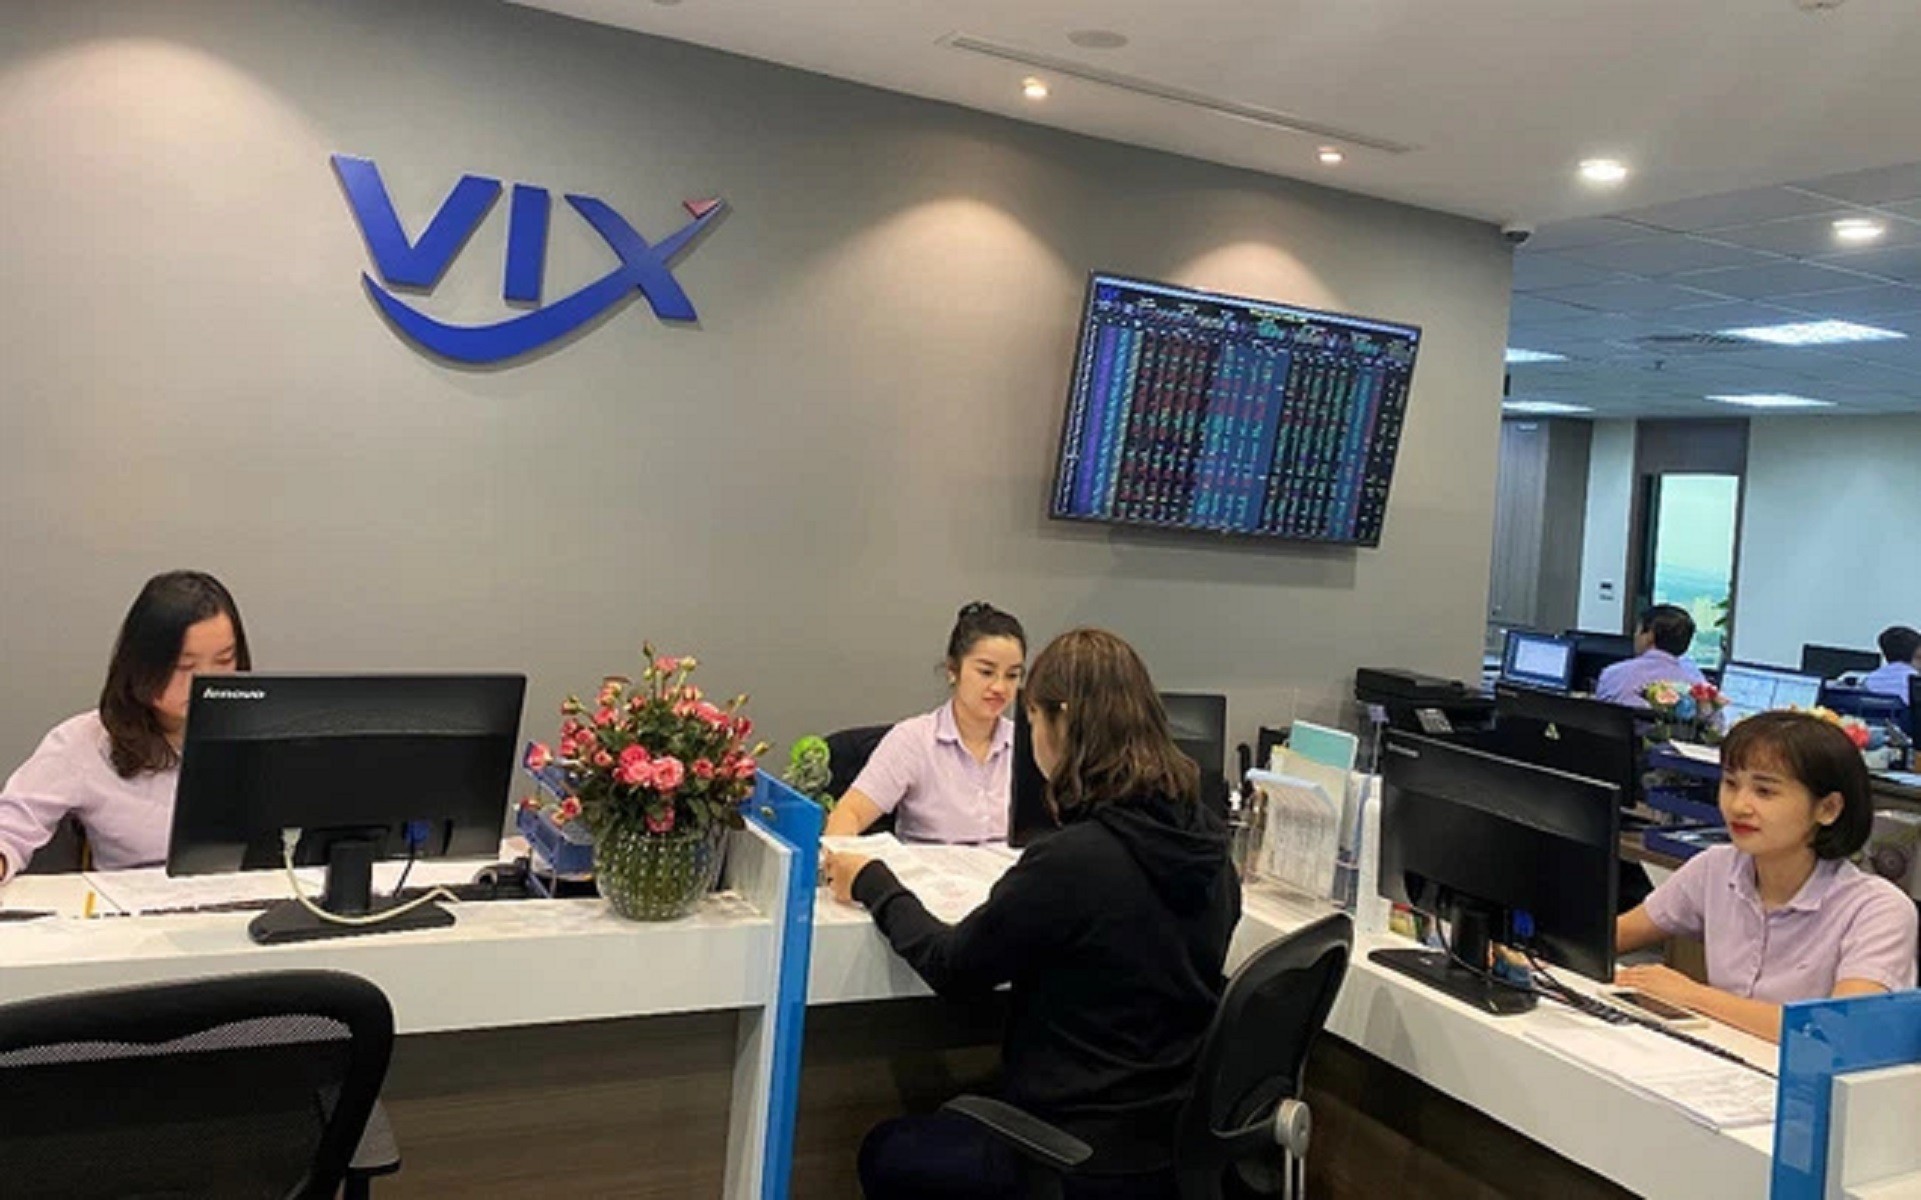 

Chứng khoán VIX tiền thân là Công ty Cổ phần Chứng khoán Vincom được thành lập vào ngày ngày 10 tháng 12 năm 2007 với tổn vốn điều lệ là 300 tỷ đồng
